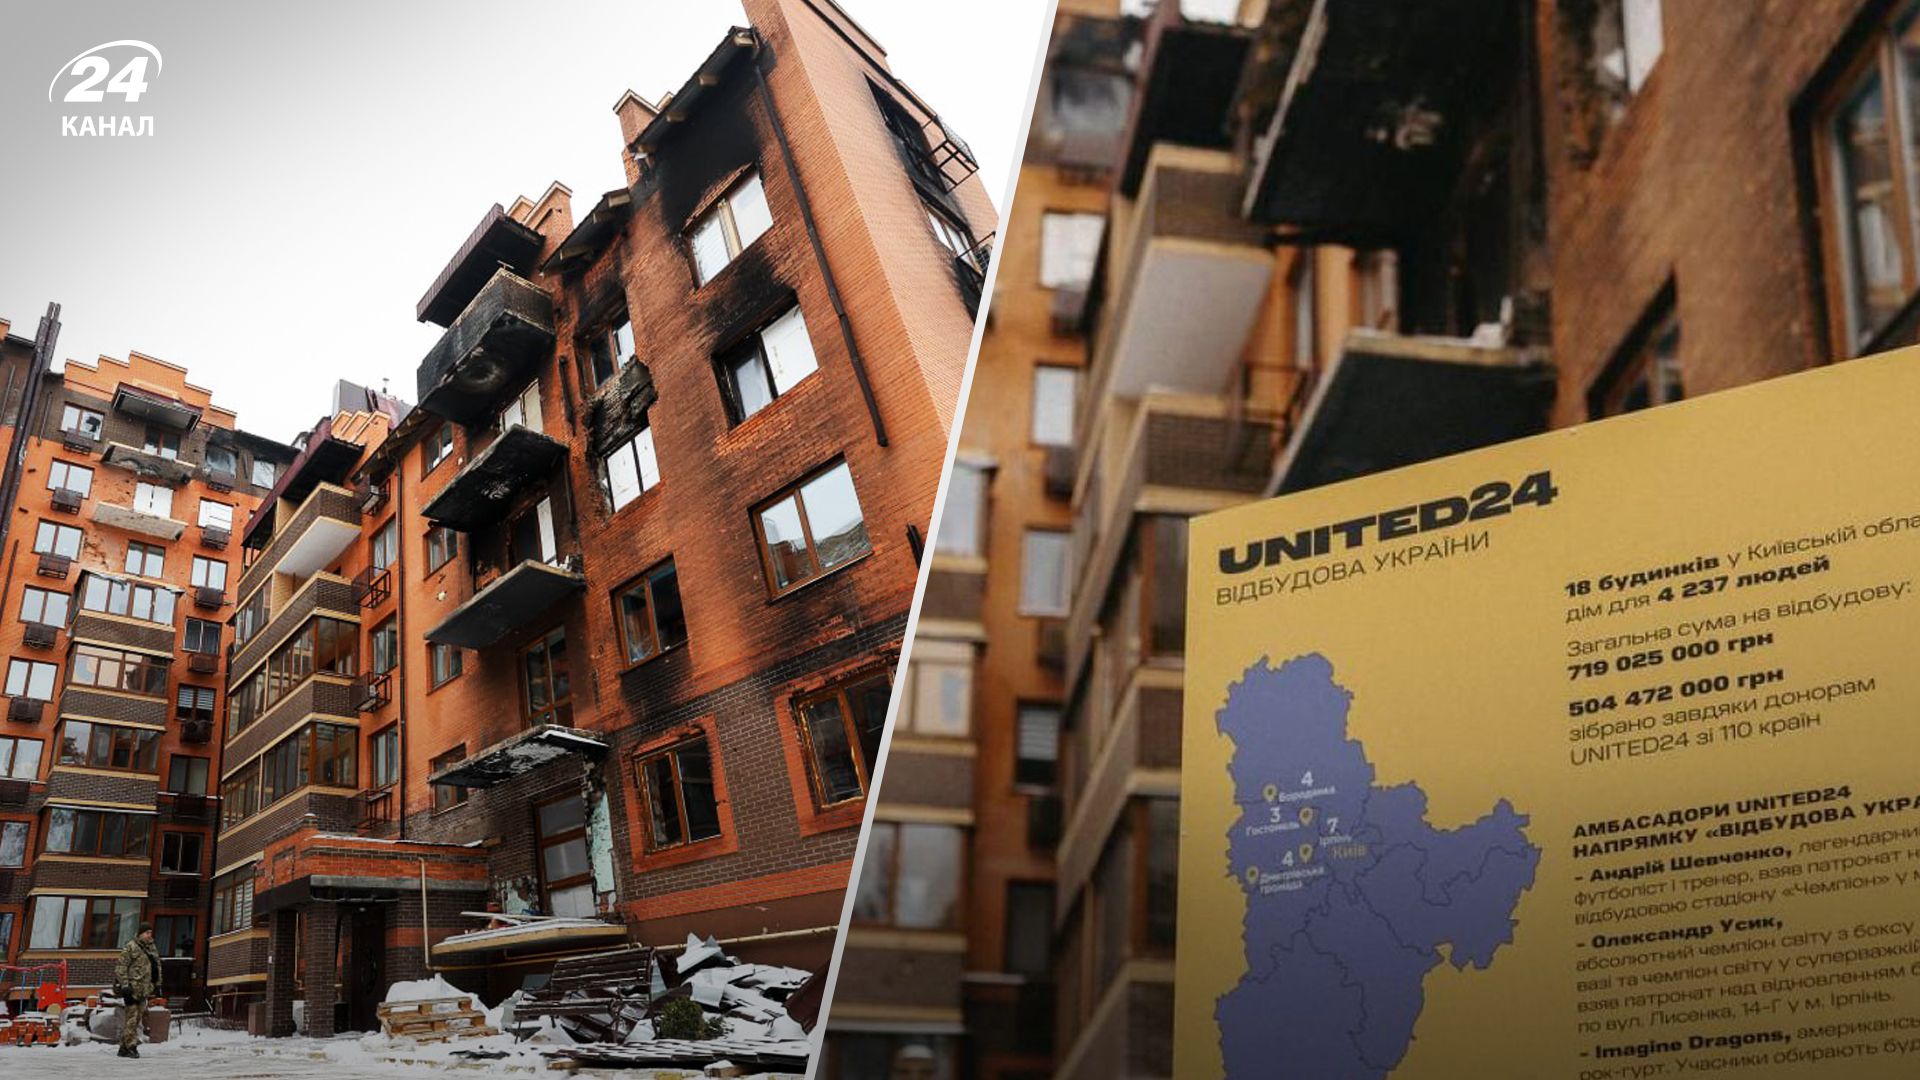 Платформа UNITED24 запустила направление восстановления Украины